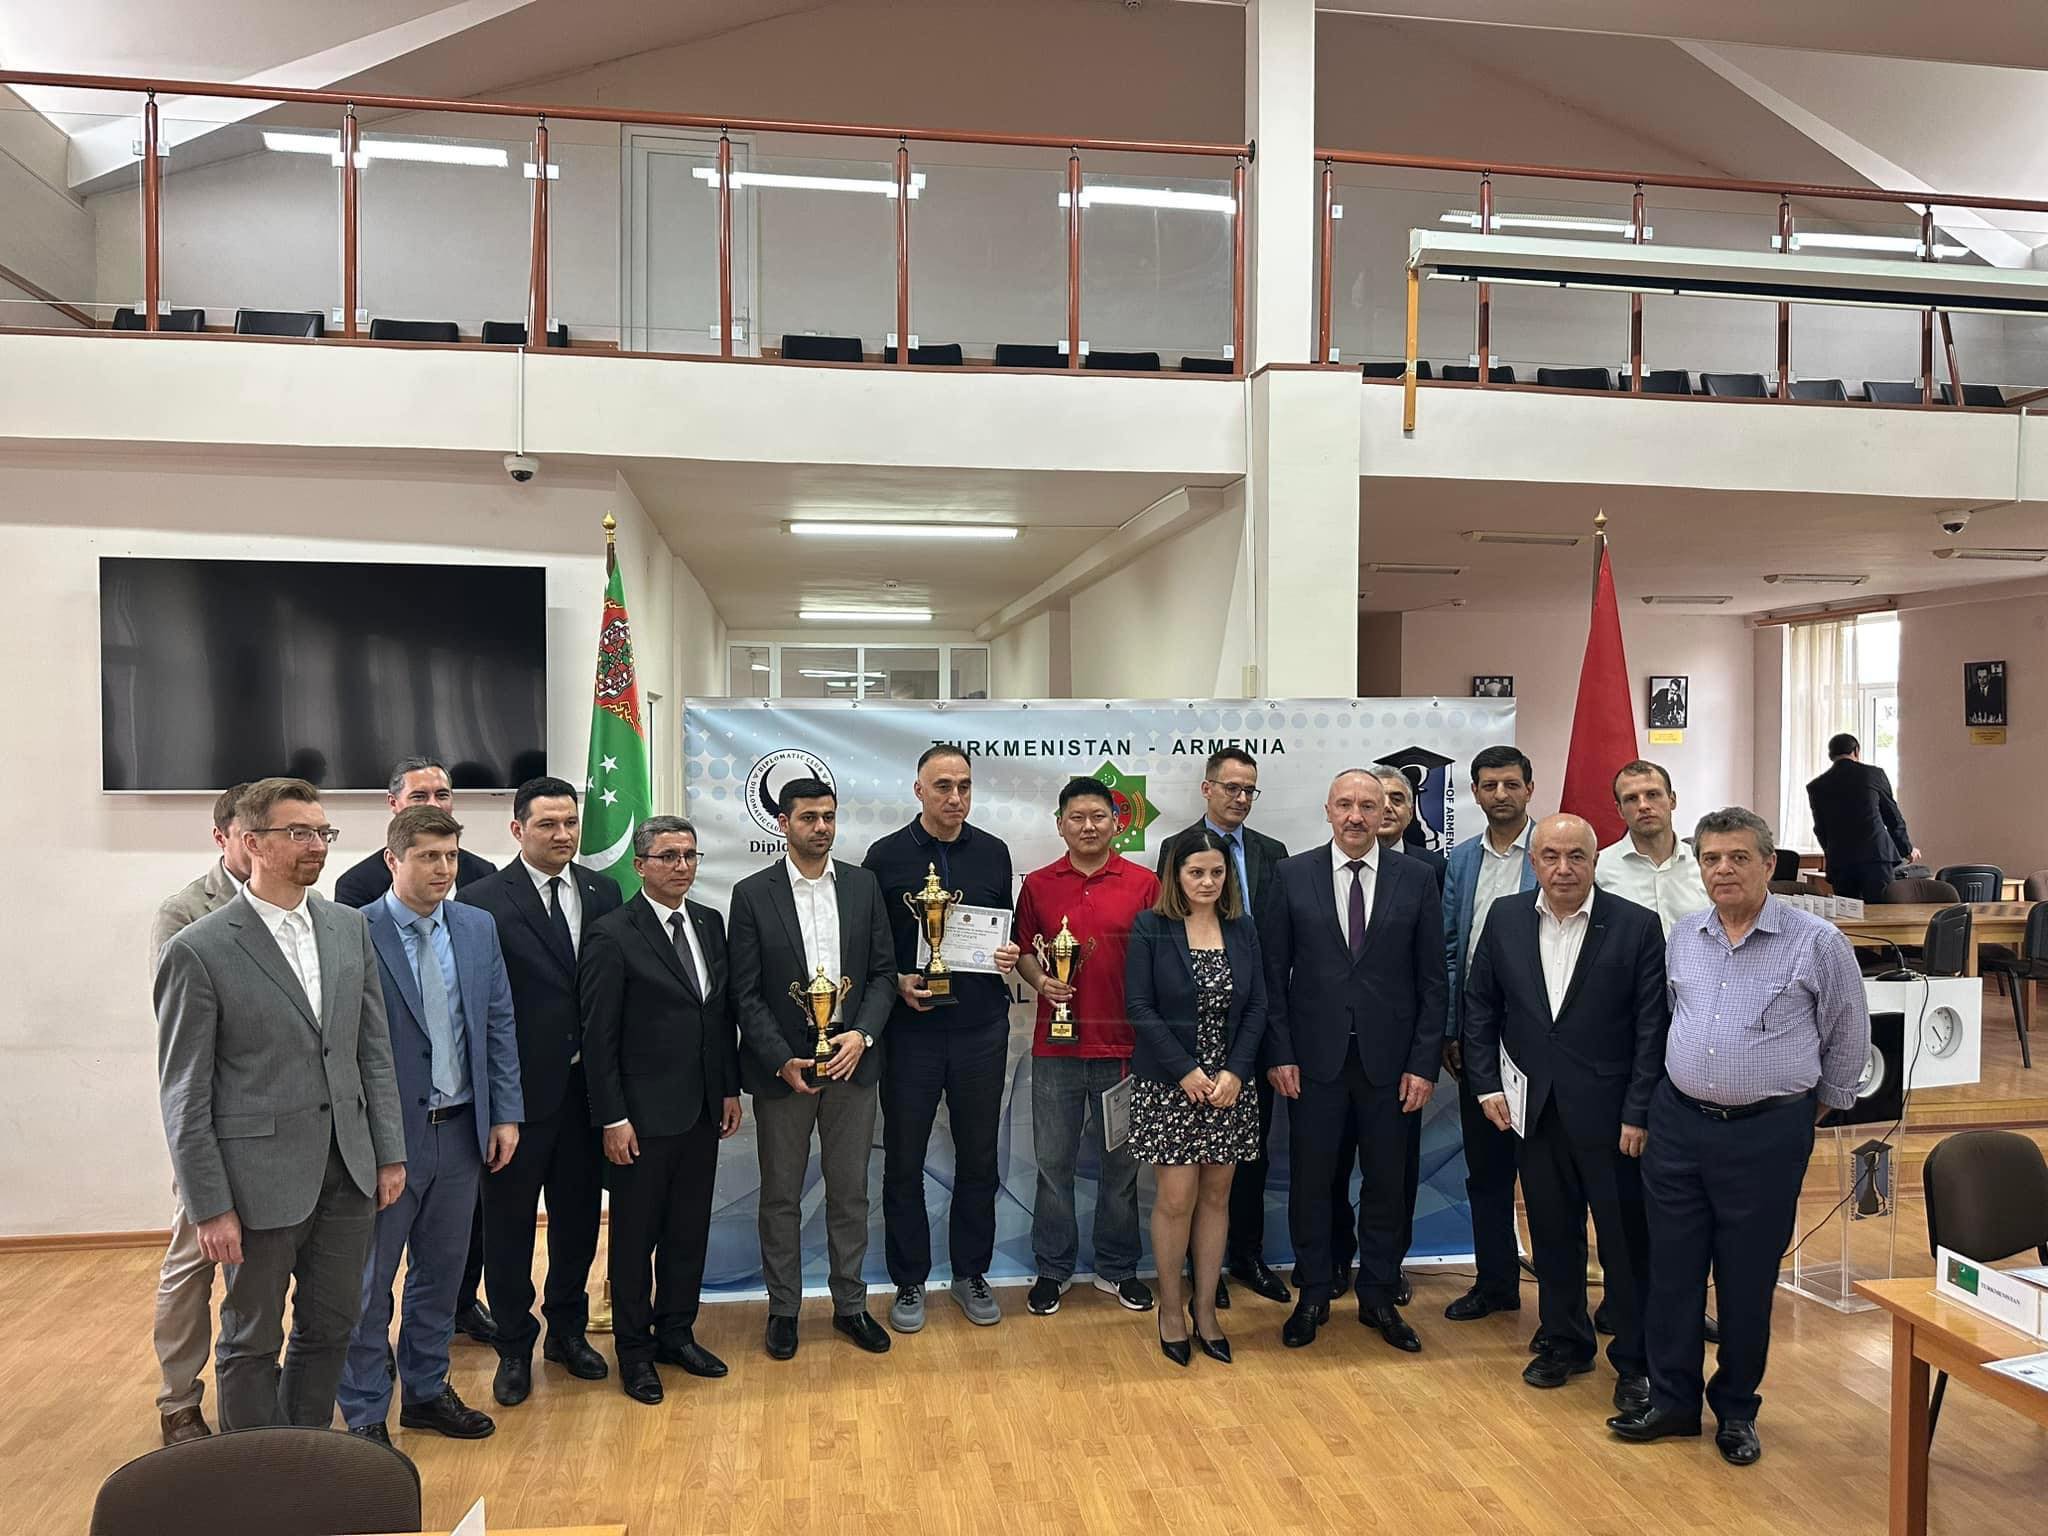 В Ереване при содействии посольства Туркменистана состоялся Шахматный турнир среди дипломатов